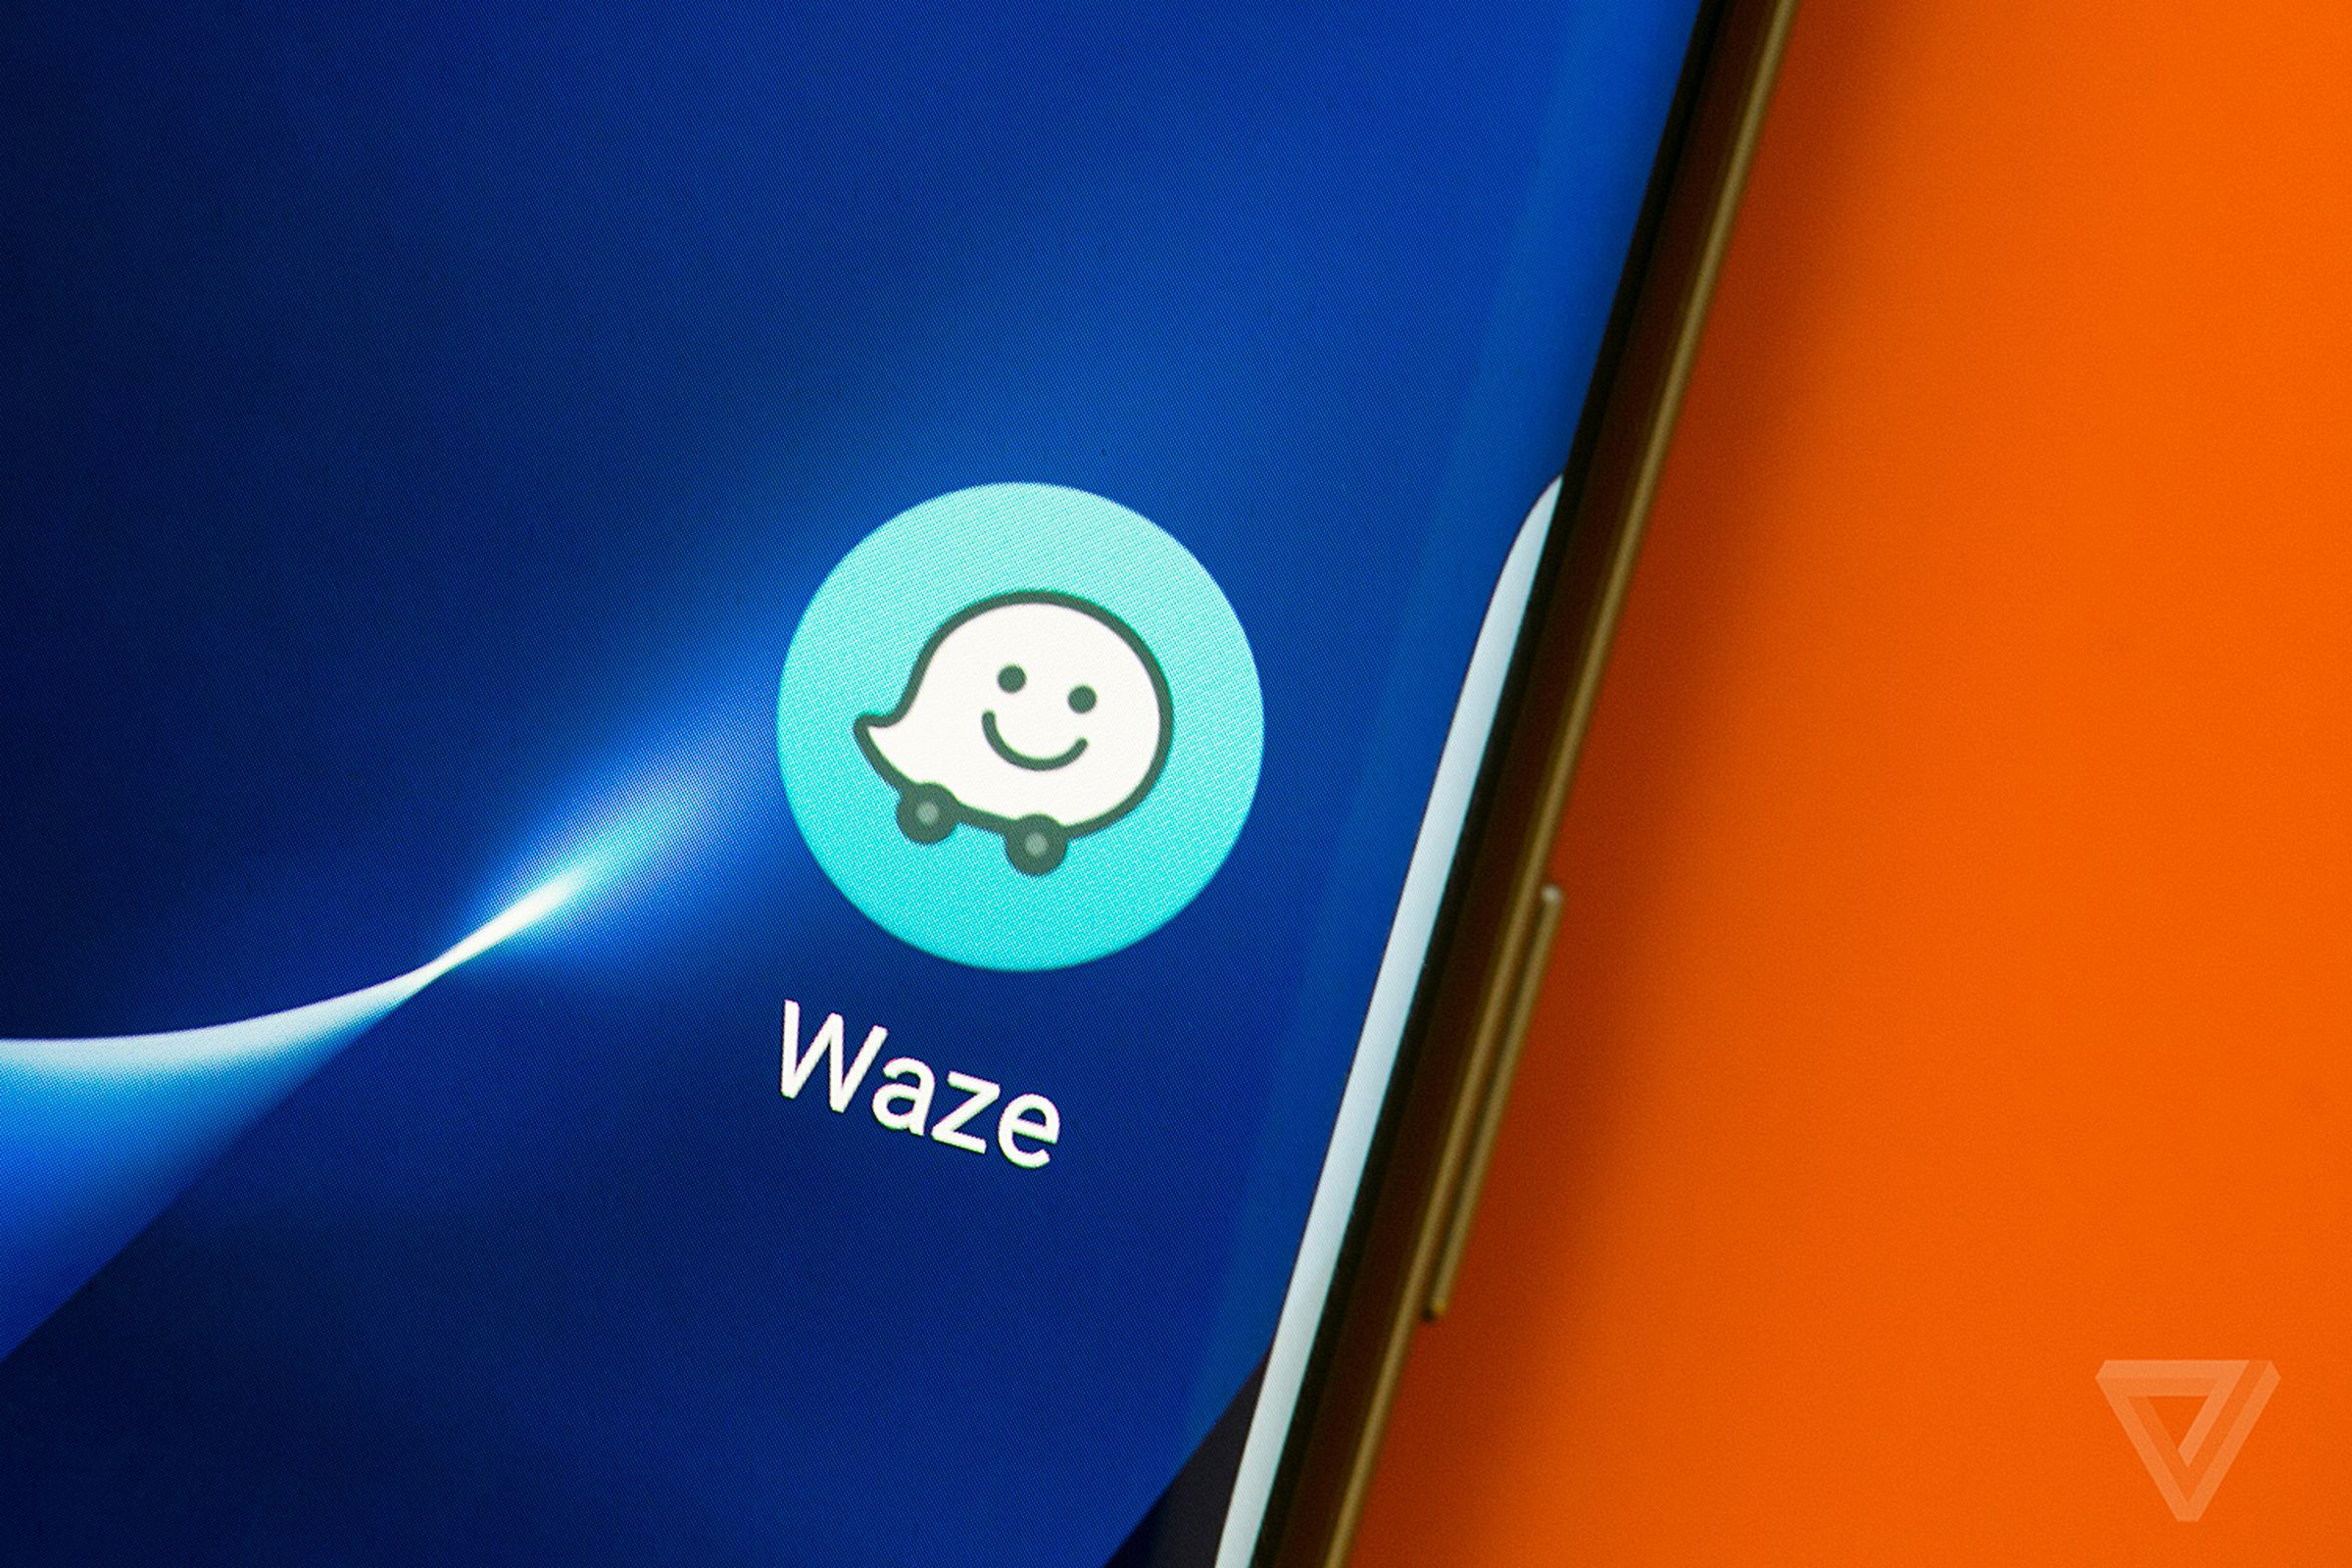 Waze’s app icon.